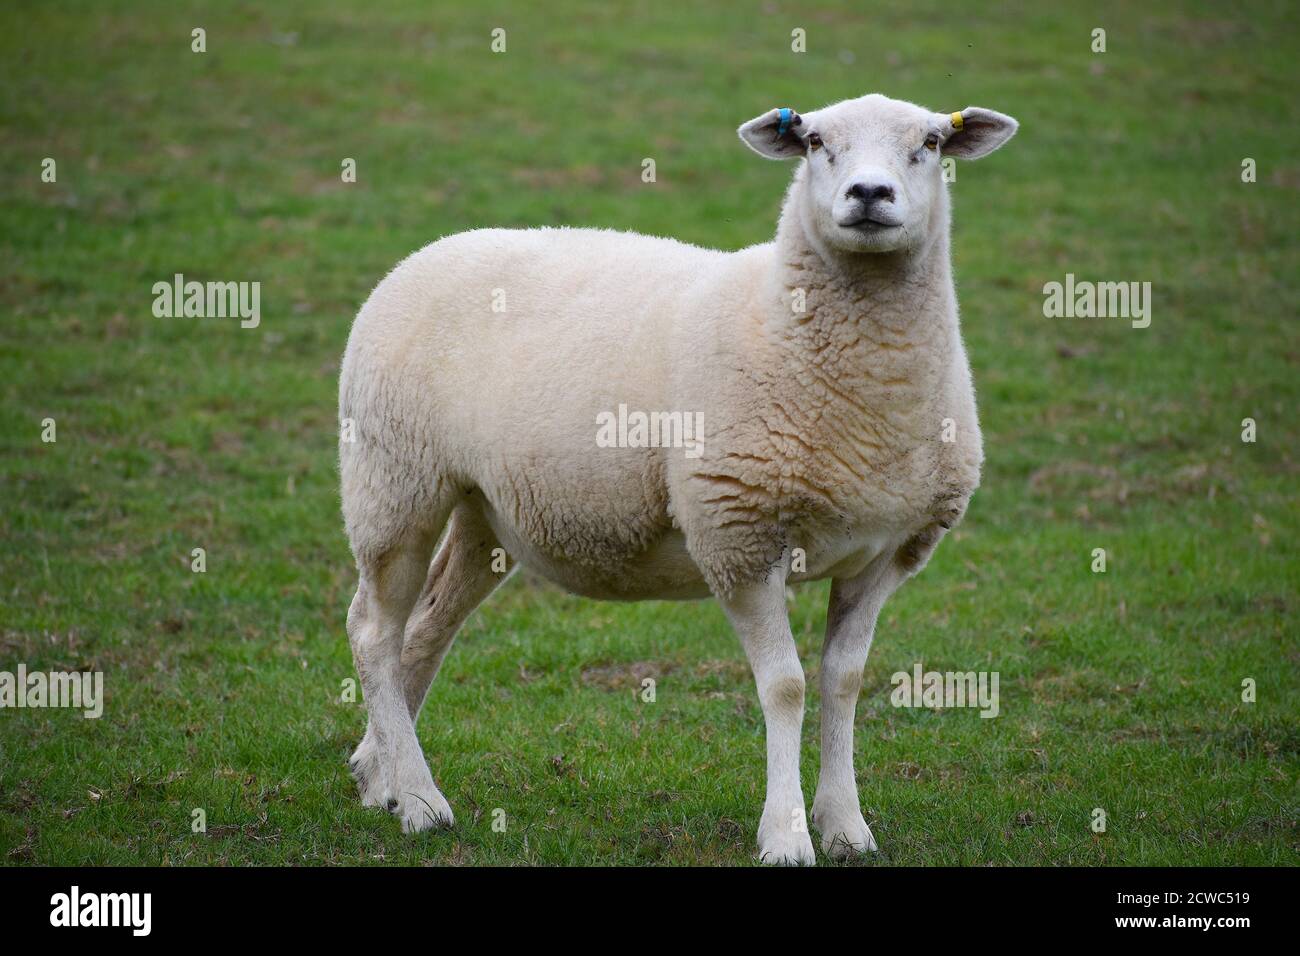 Lleyn pecore sono Llyn penisola di razza gallese adatto a upland e pianura pascolo tranquillo in natura alto in latte con eccellente lana bianca rialzata per la carne Foto Stock